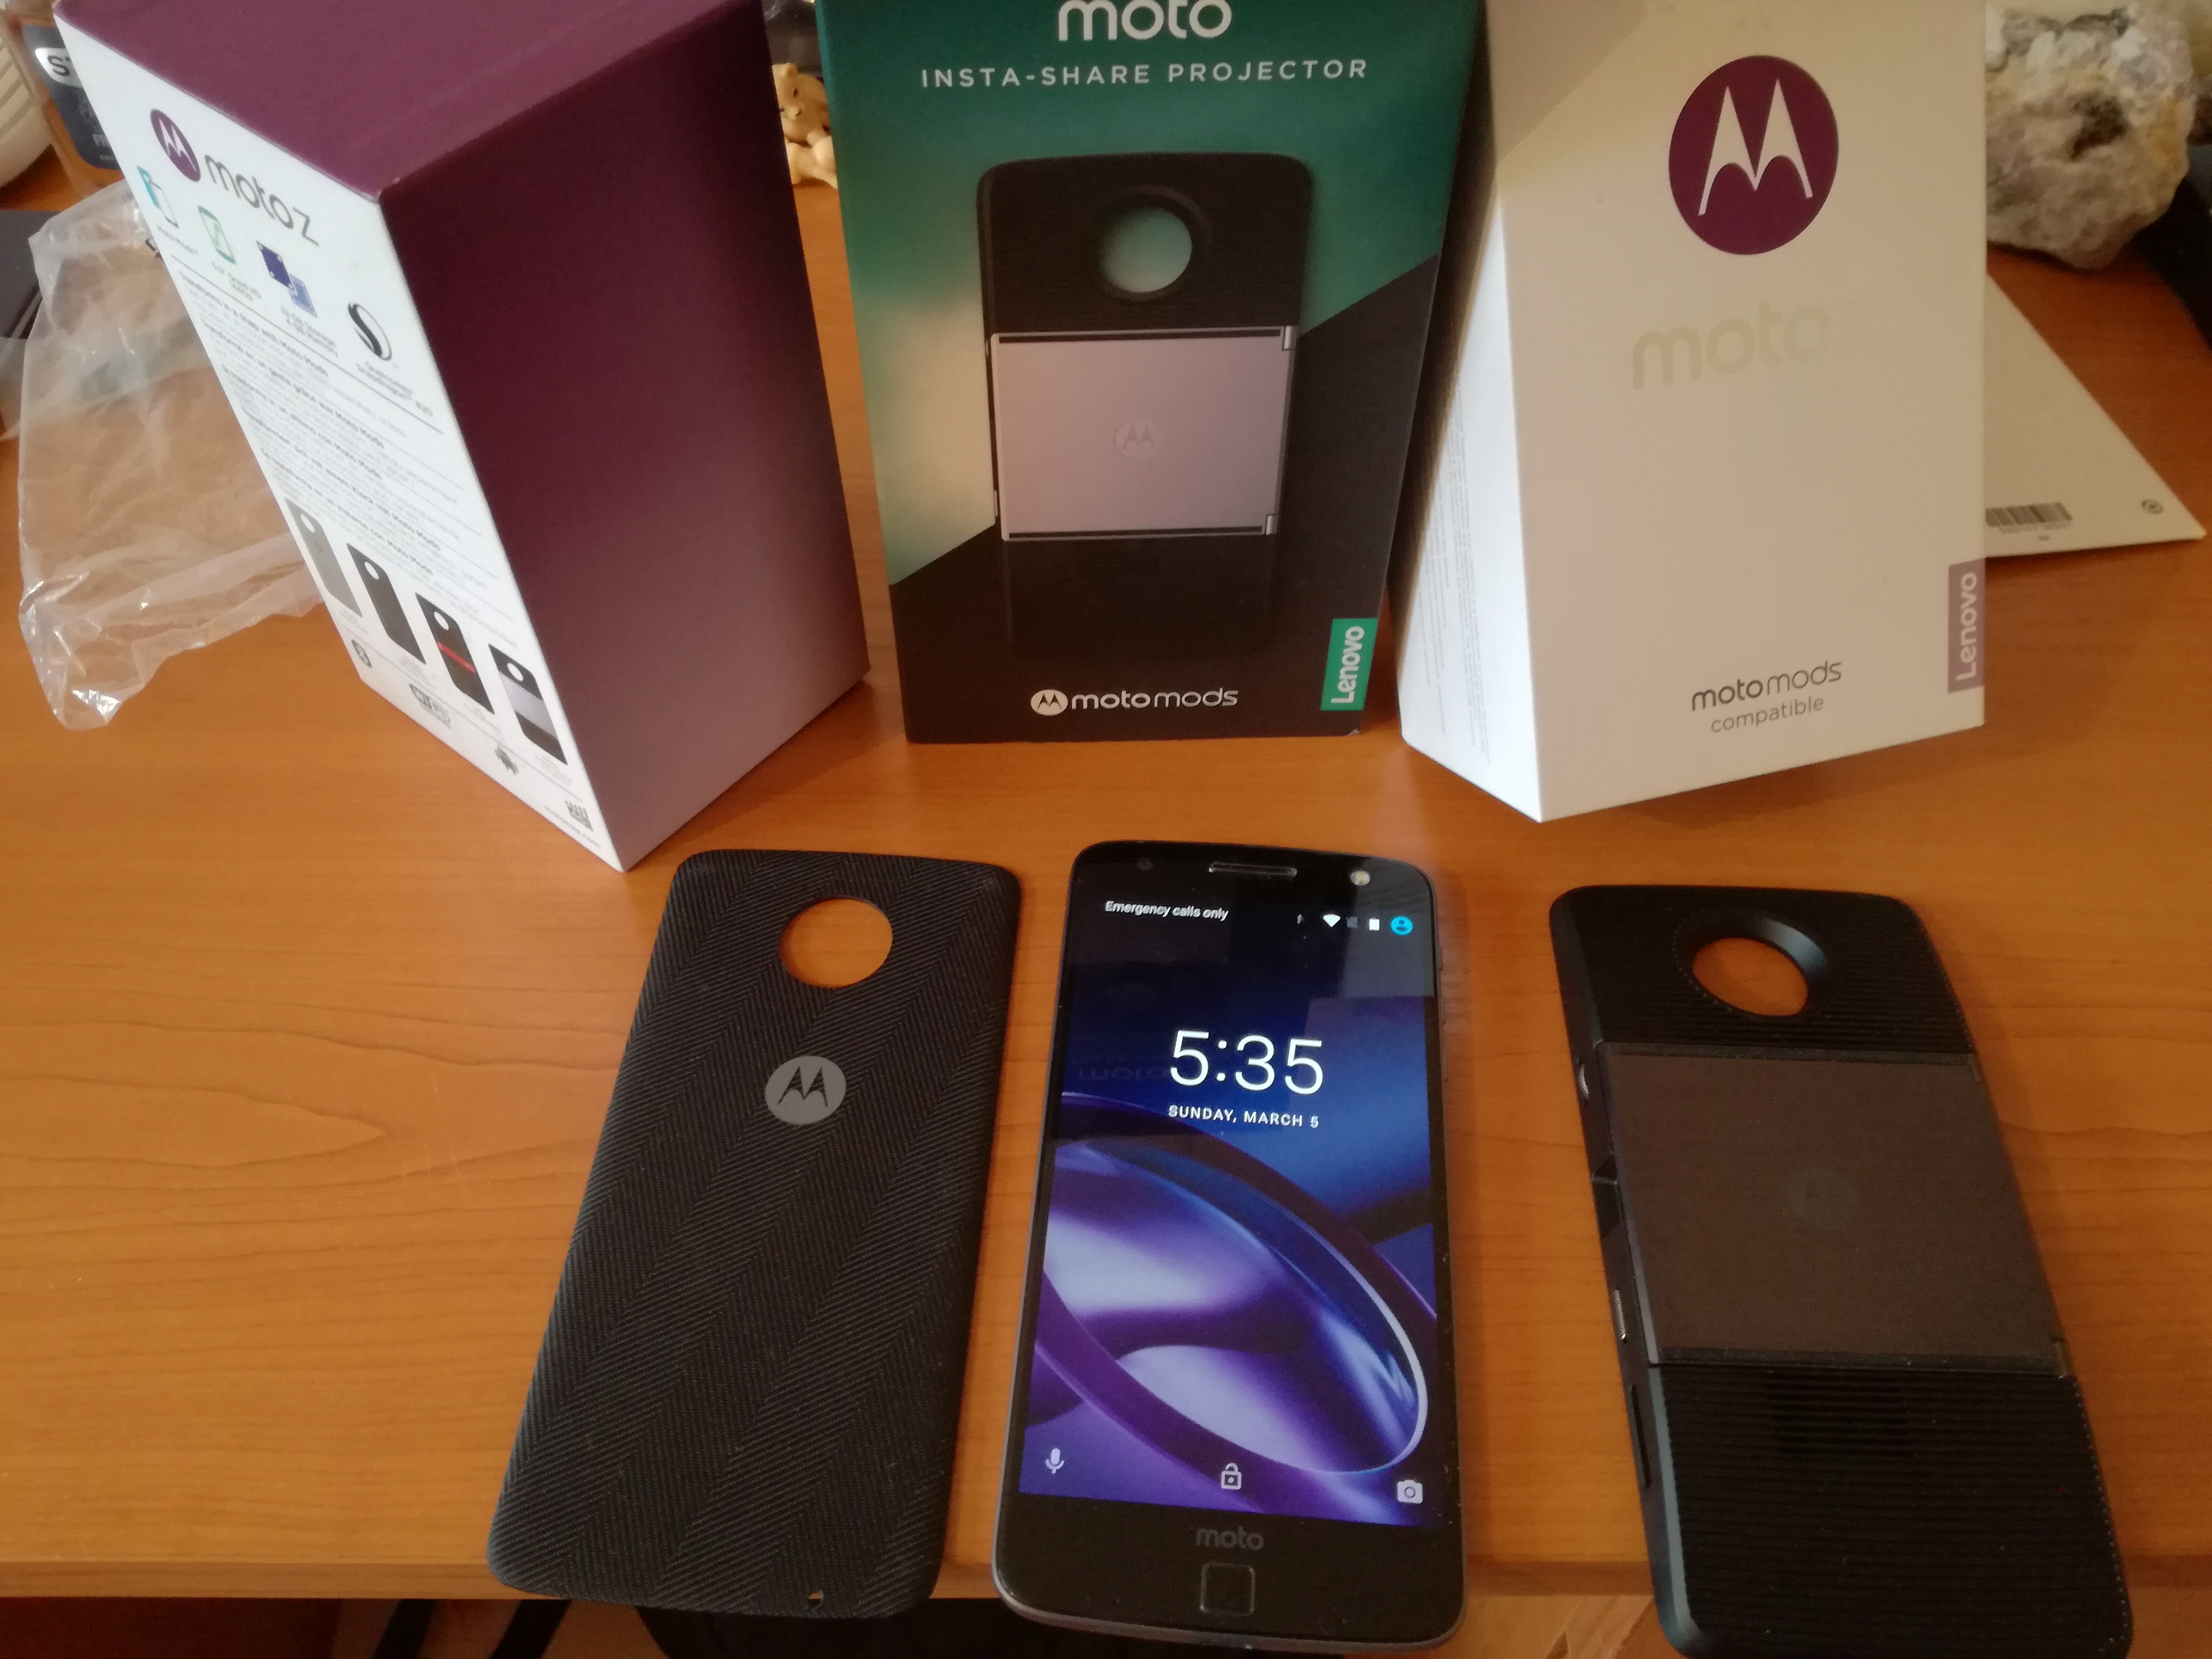 Motorola Moto Z е единственият успешен модулен смартфон, предлагащ доста богат избор